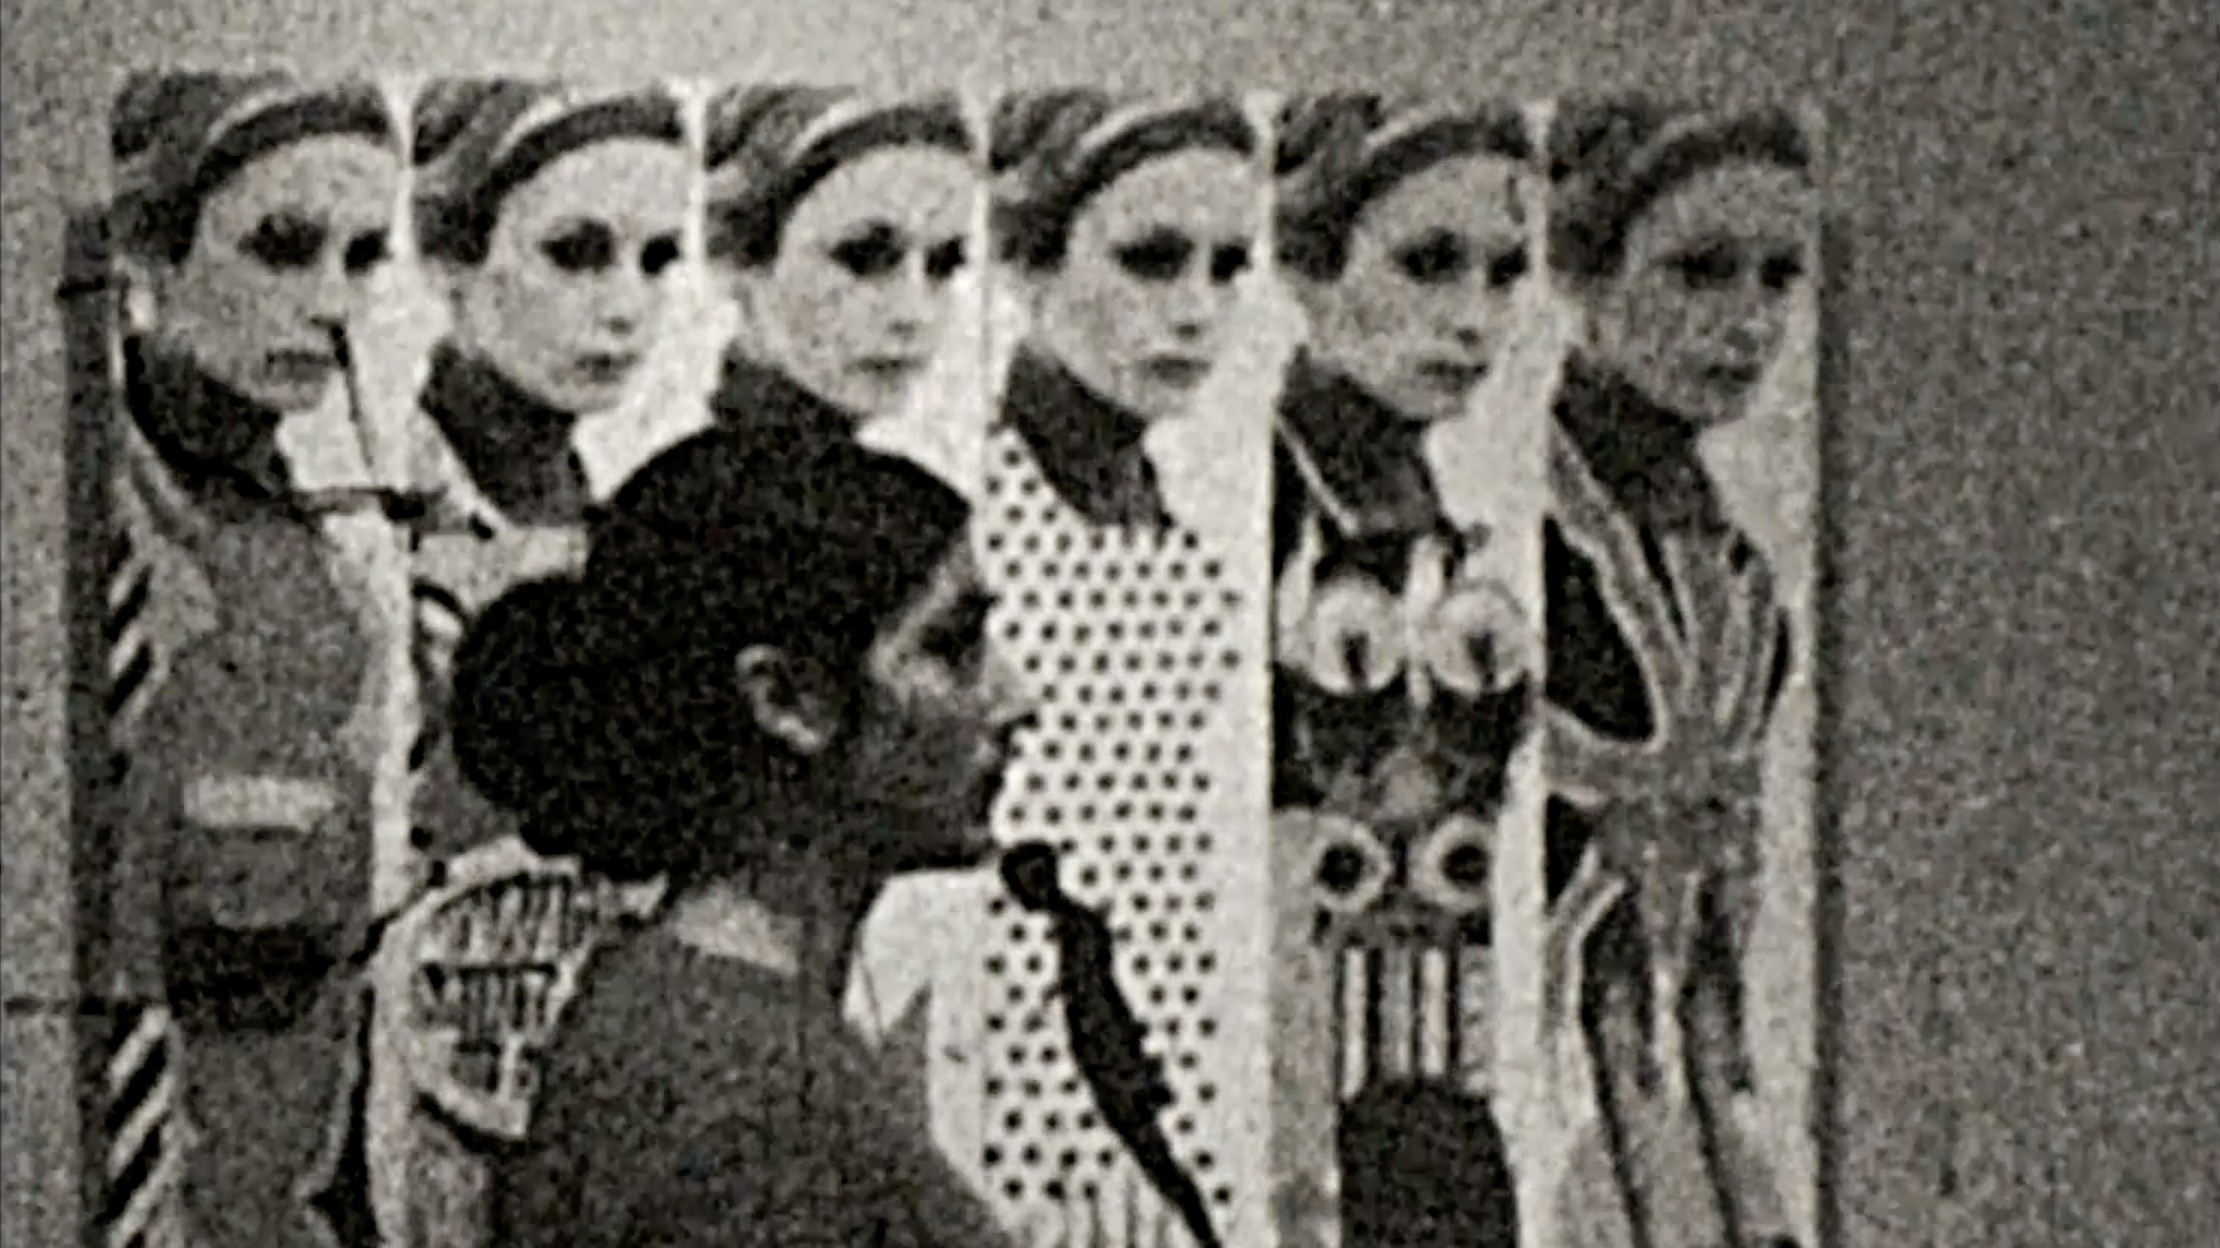 N8 films made at György Kemény's exhibition at the Fészek Művészklub in 1968